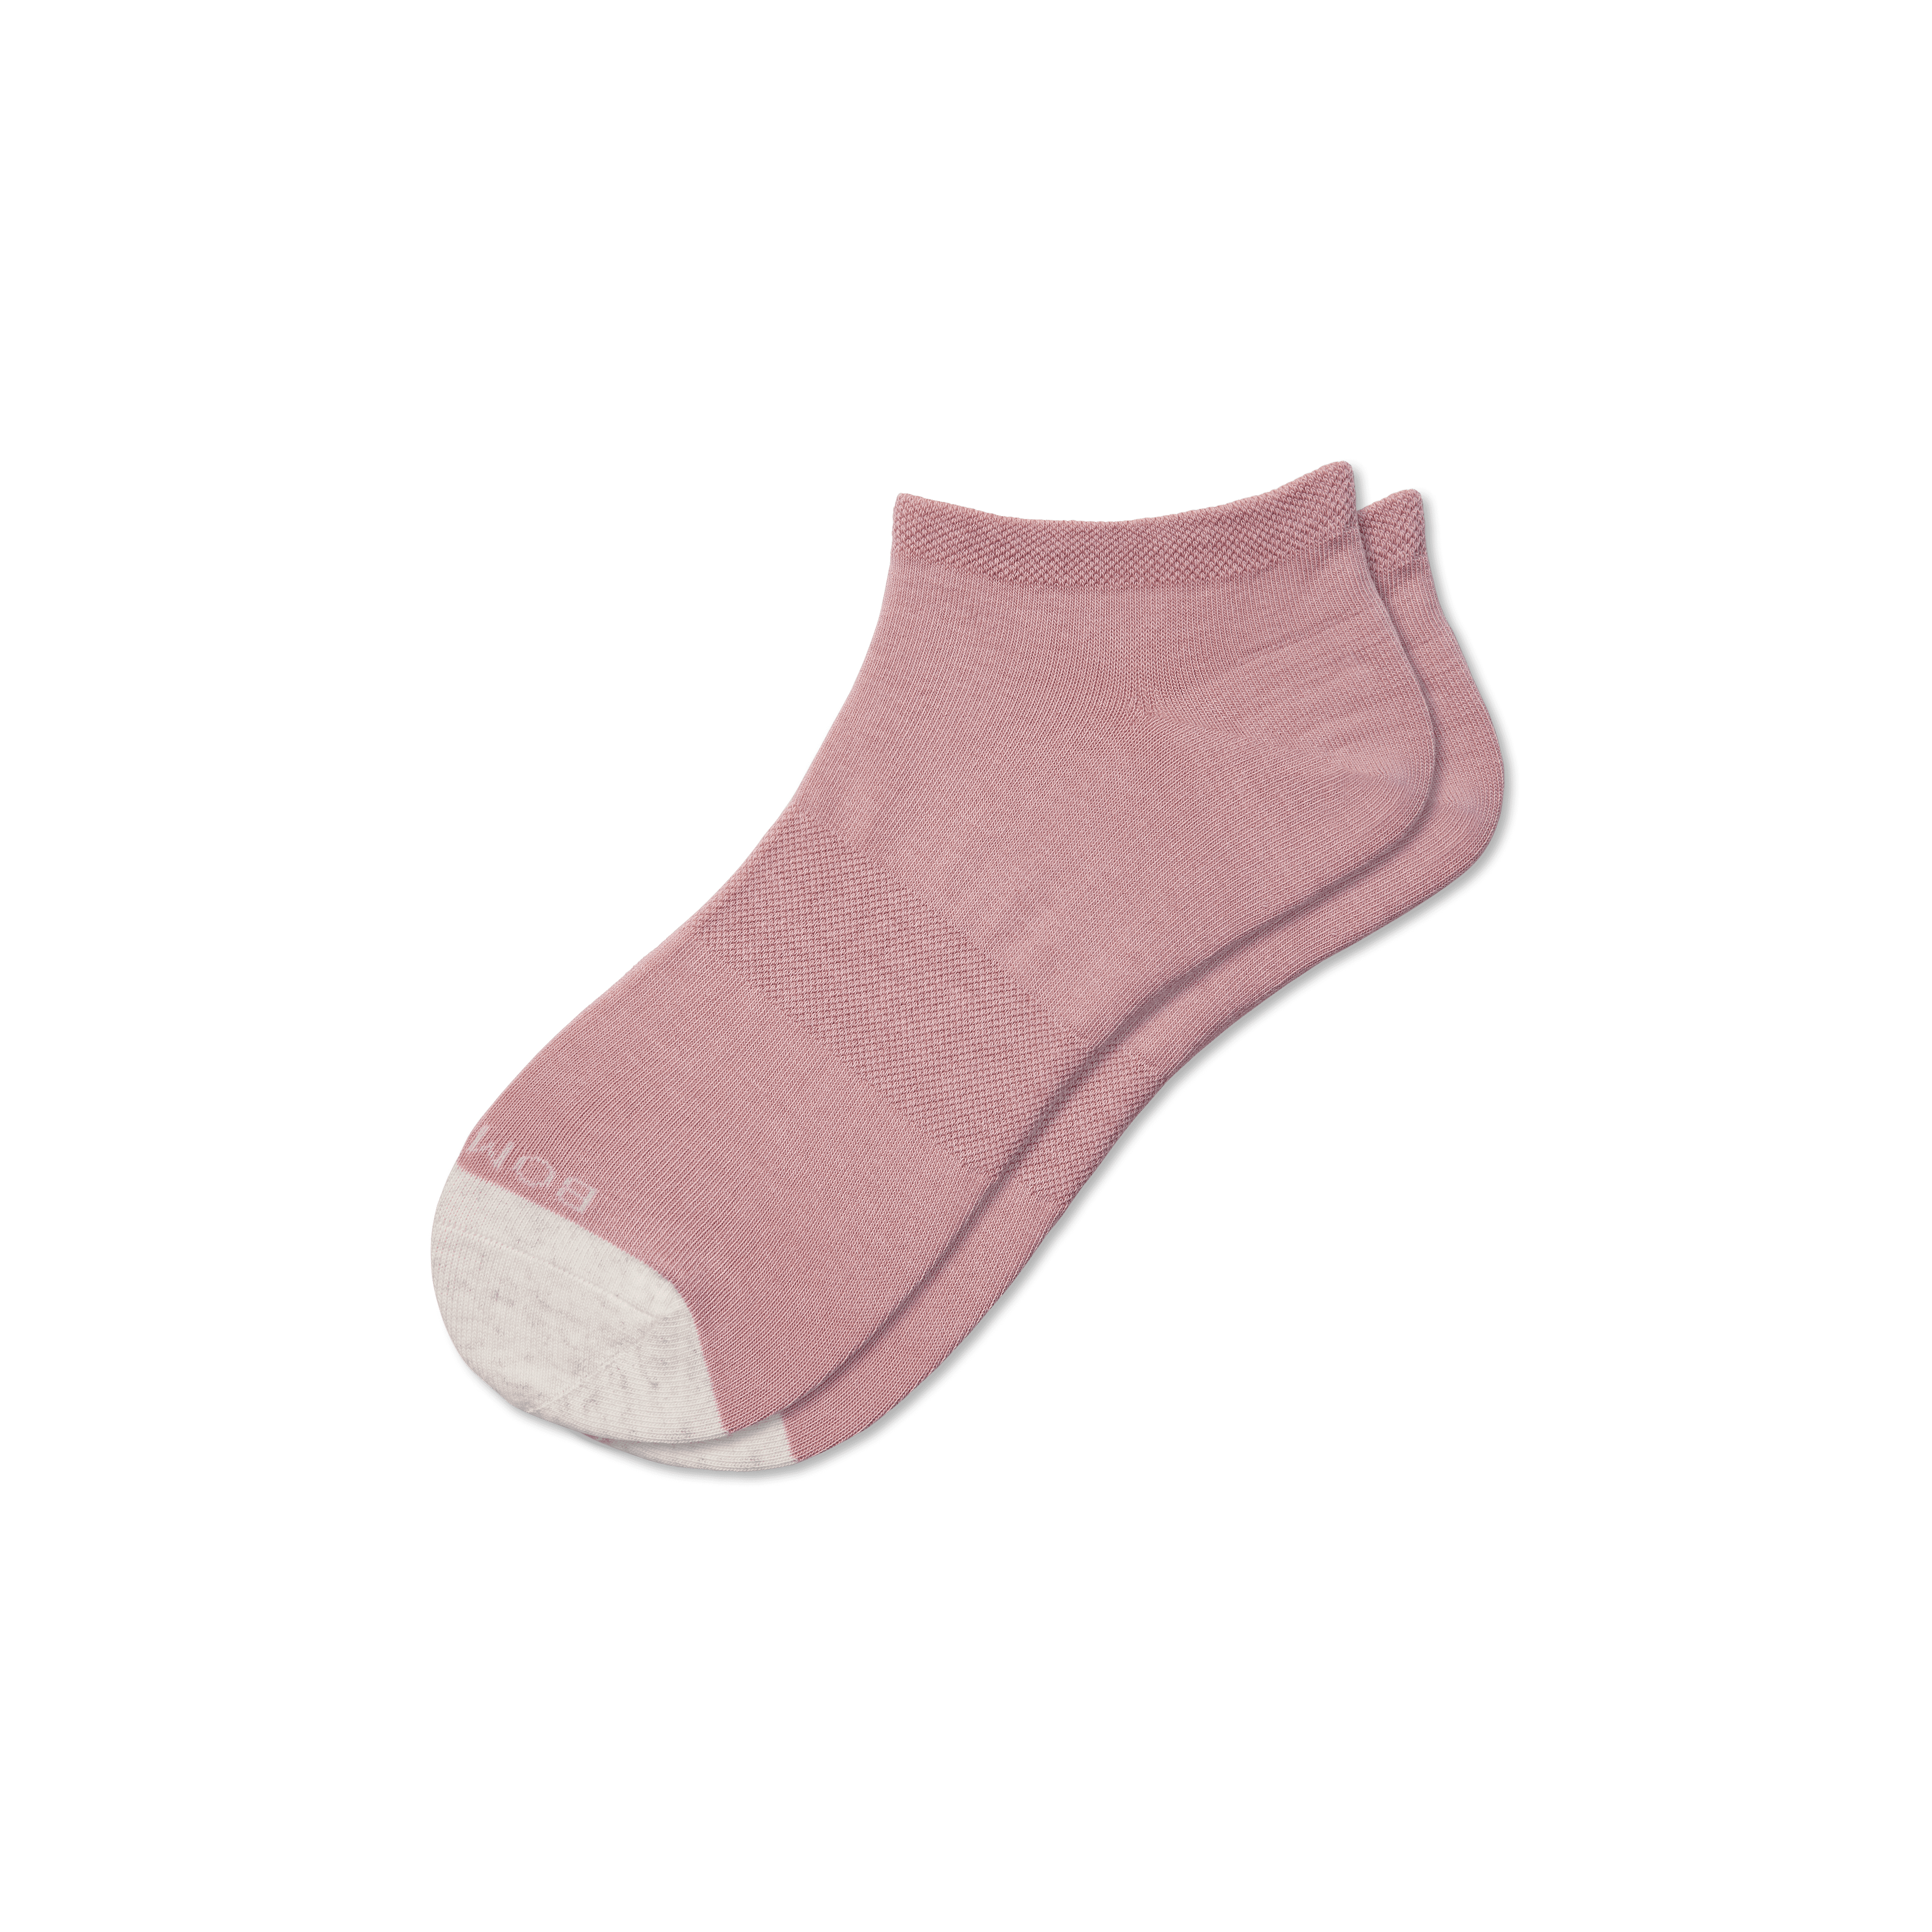 Bombas Lightweight Ankle Socks In Spanish Rose